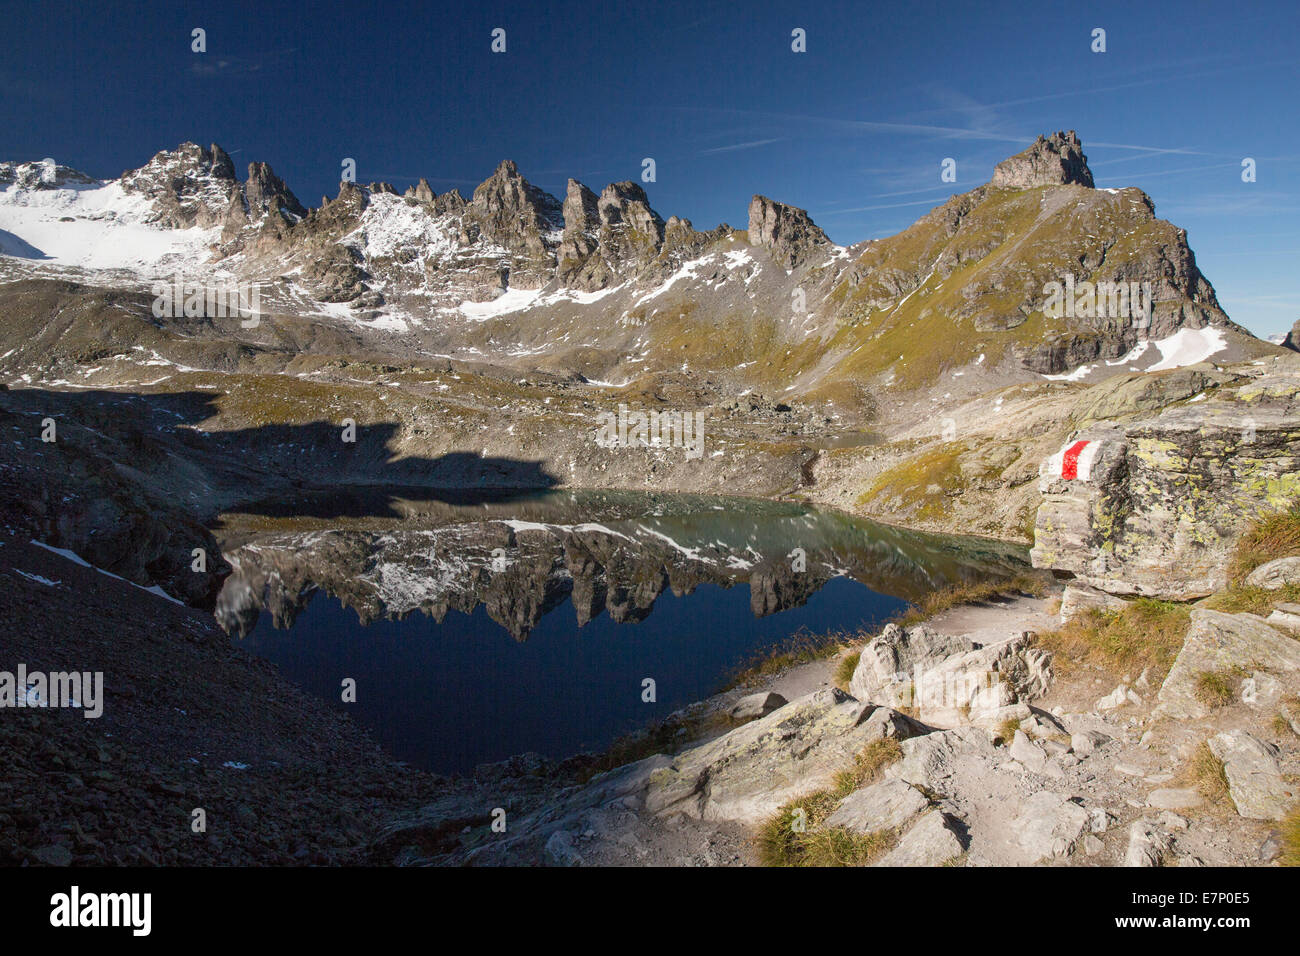 Pizol Wildsee, gris, cuernos, montaña, montañas, lago de montaña, la reflexión, la SG, en el cantón de San Gallen, 5 lagos excursión, Suiza, la Unión Europea Foto de stock